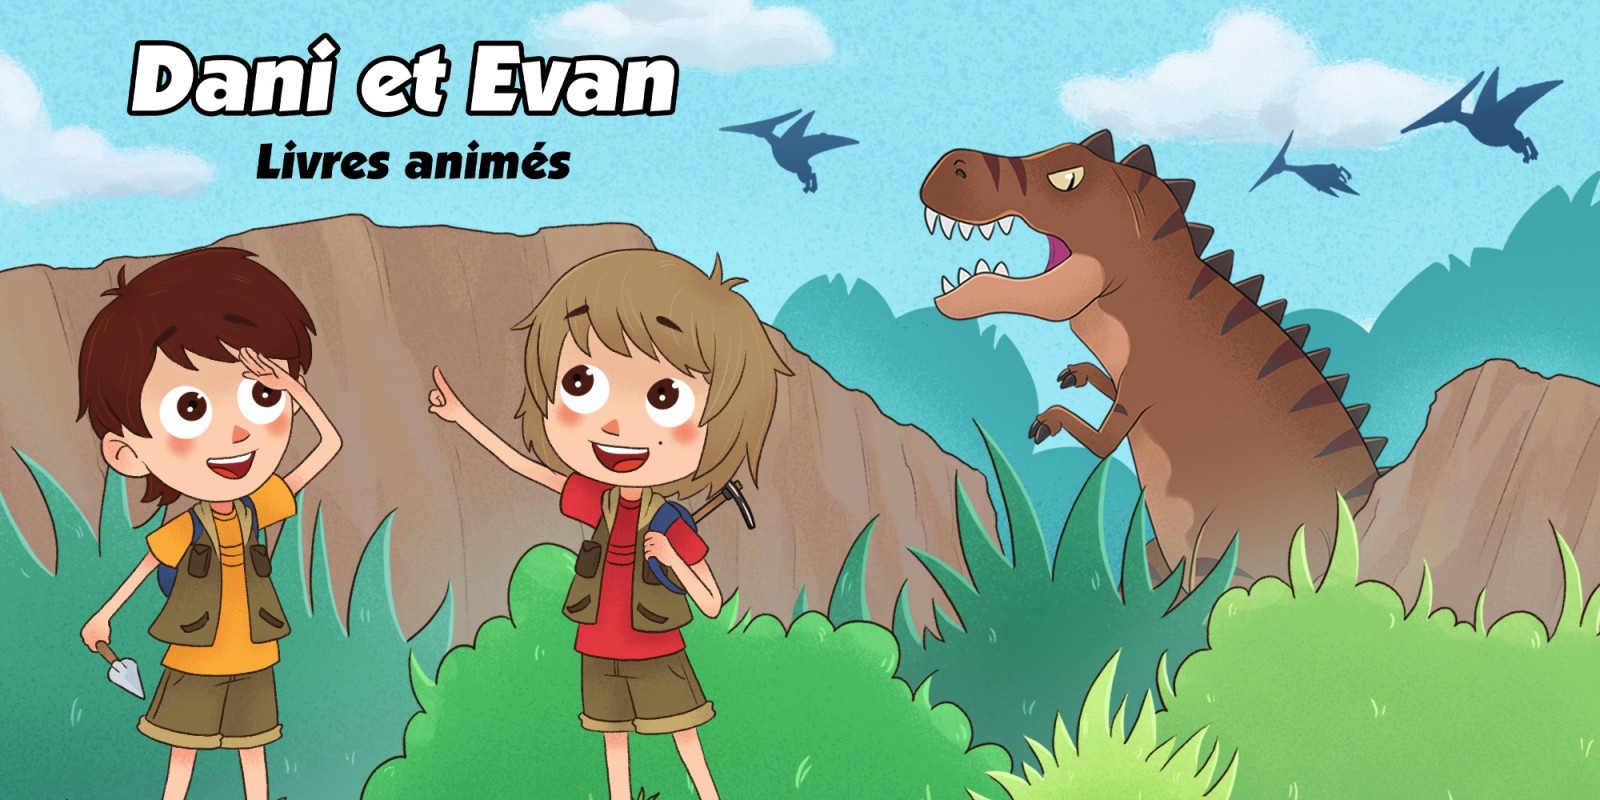 Dani et Evan: Livres animés